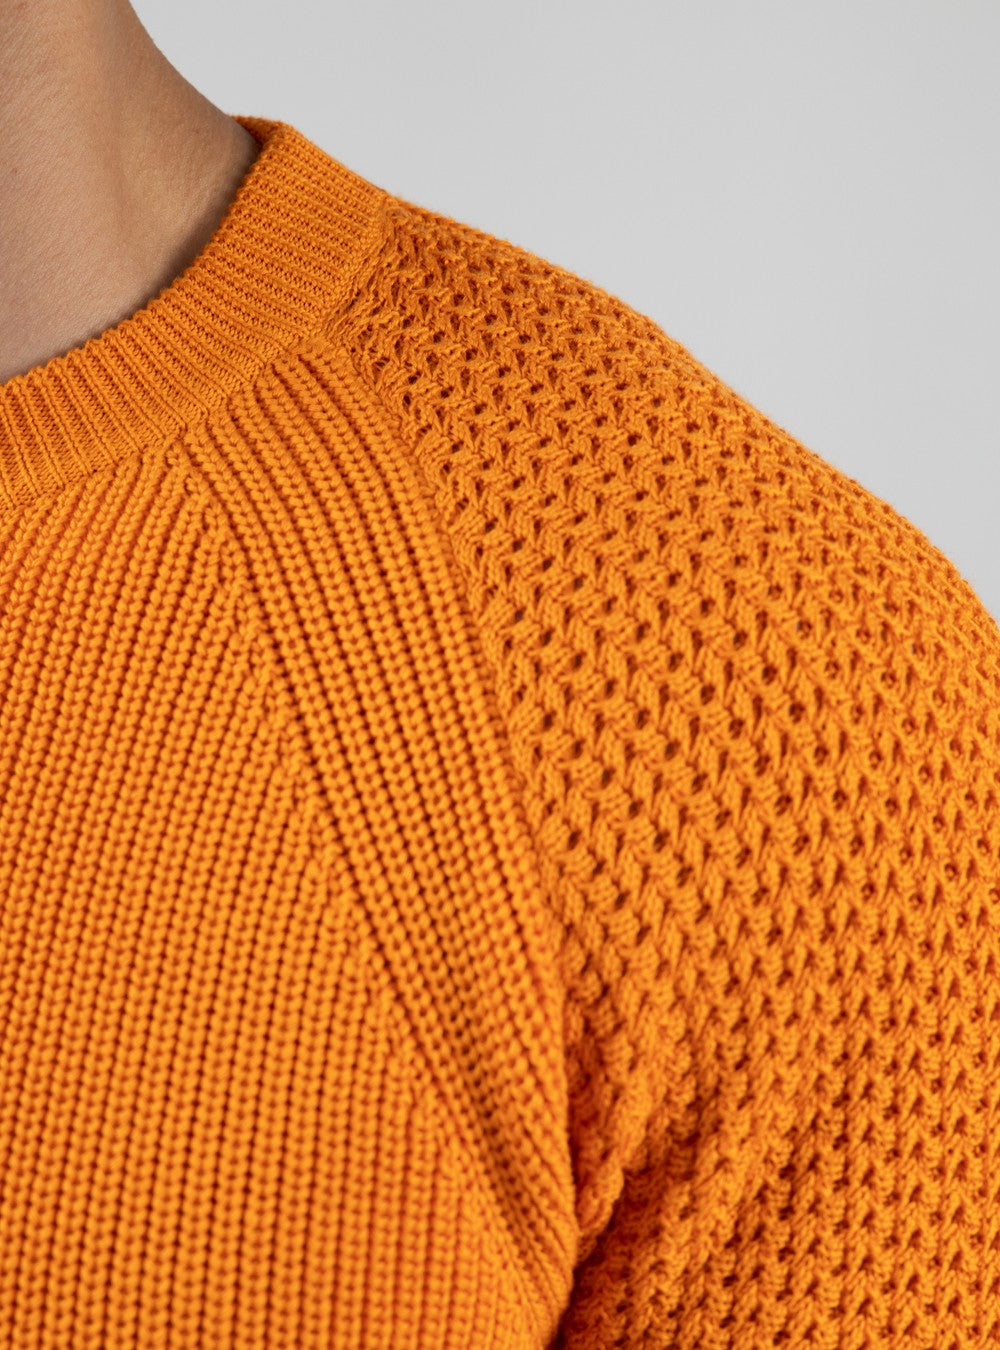 Oceanus Round Neck Sweater in Sea Island Cotton, Mandarin